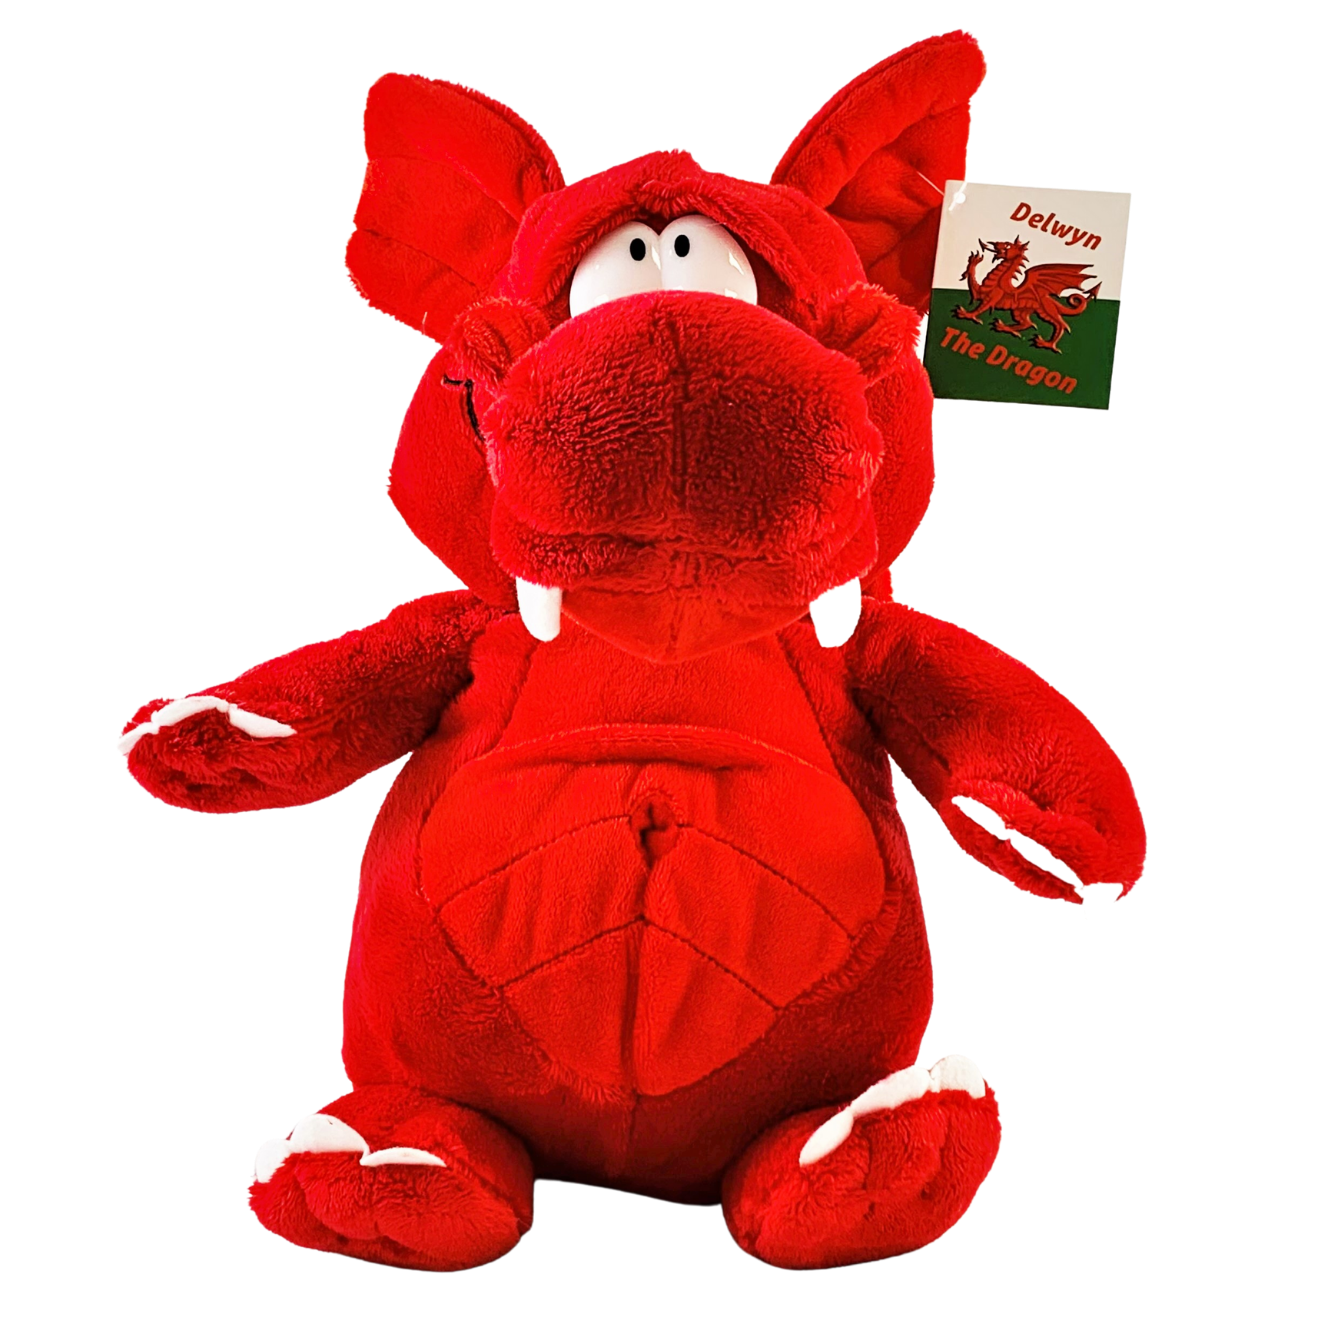 25 cm Delwyn the Welsh Dragon Soft Toy